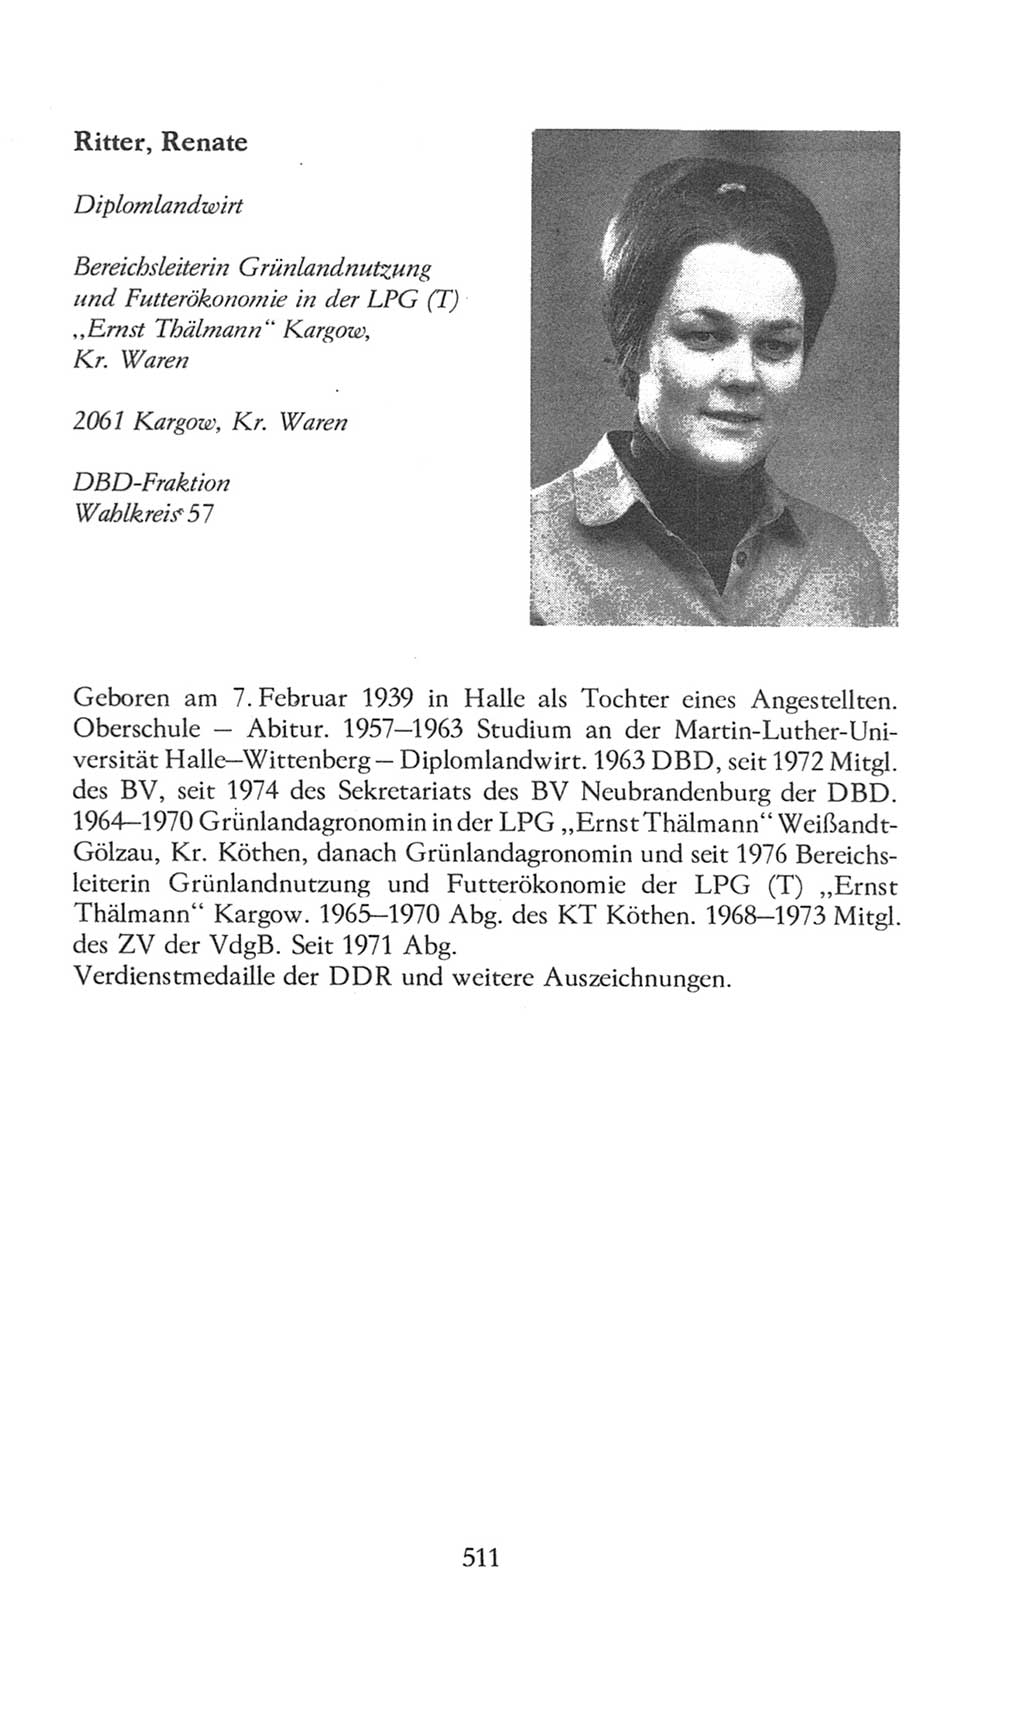 Volkskammer (VK) der Deutschen Demokratischen Republik (DDR), 8. Wahlperiode 1981-1986, Seite 511 (VK. DDR 8. WP. 1981-1986, S. 511)